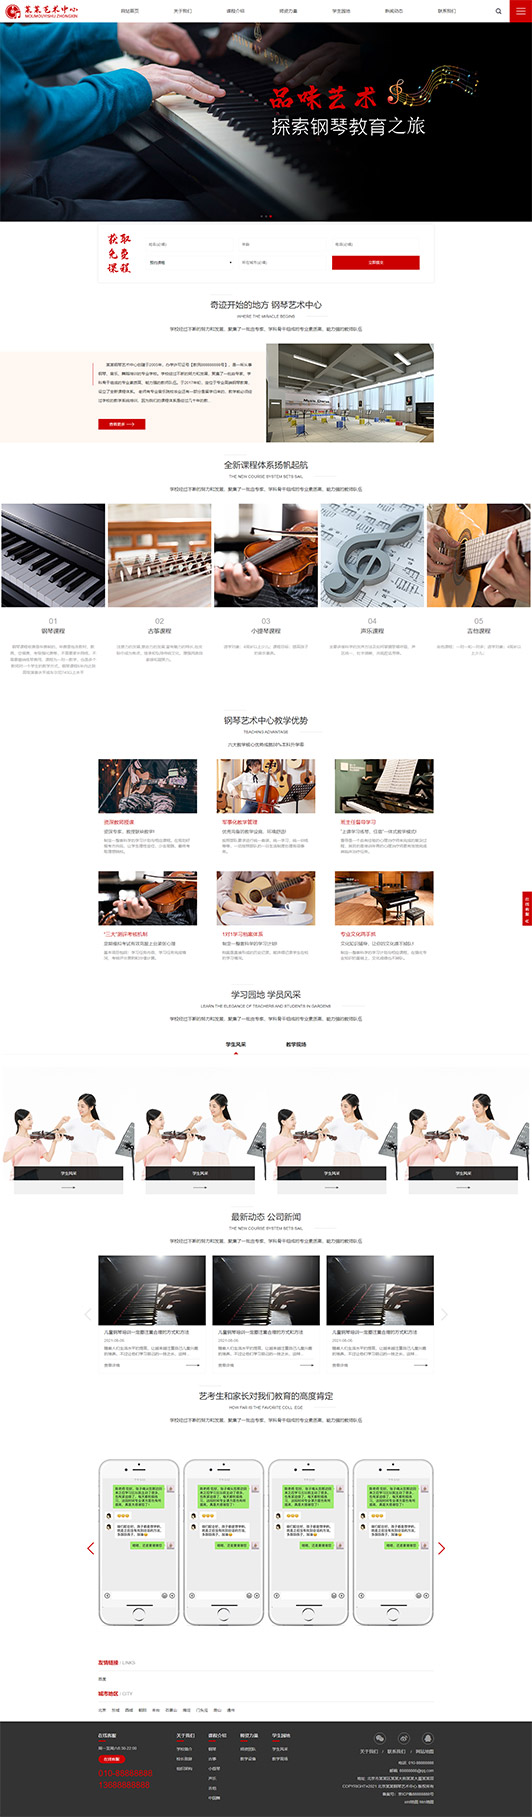 崇左钢琴艺术培训公司响应式企业网站